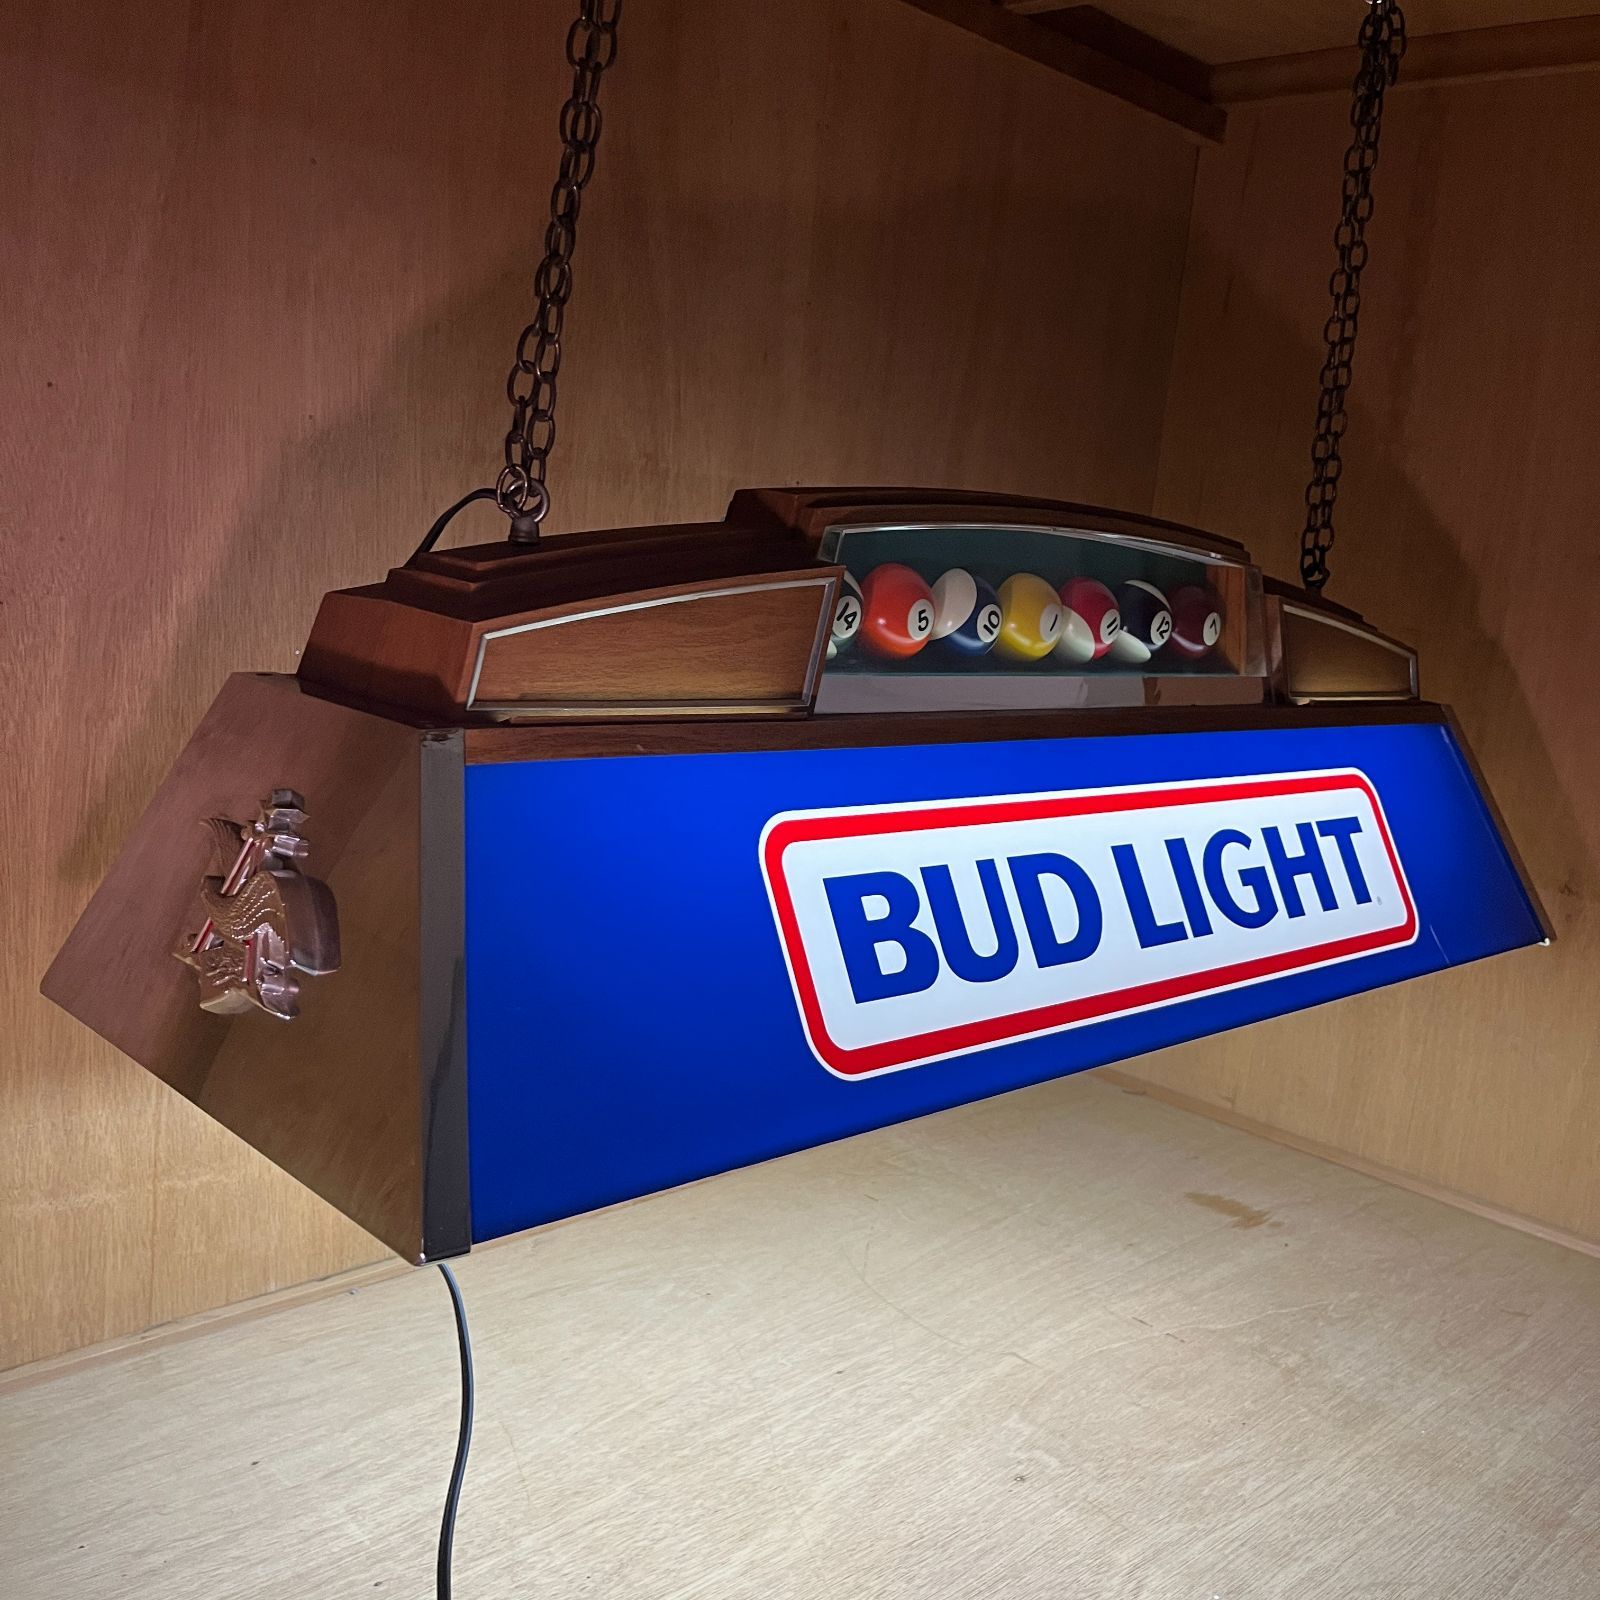 プールバーライト】1987年製 Bud Light (バドライト)プールランプ 